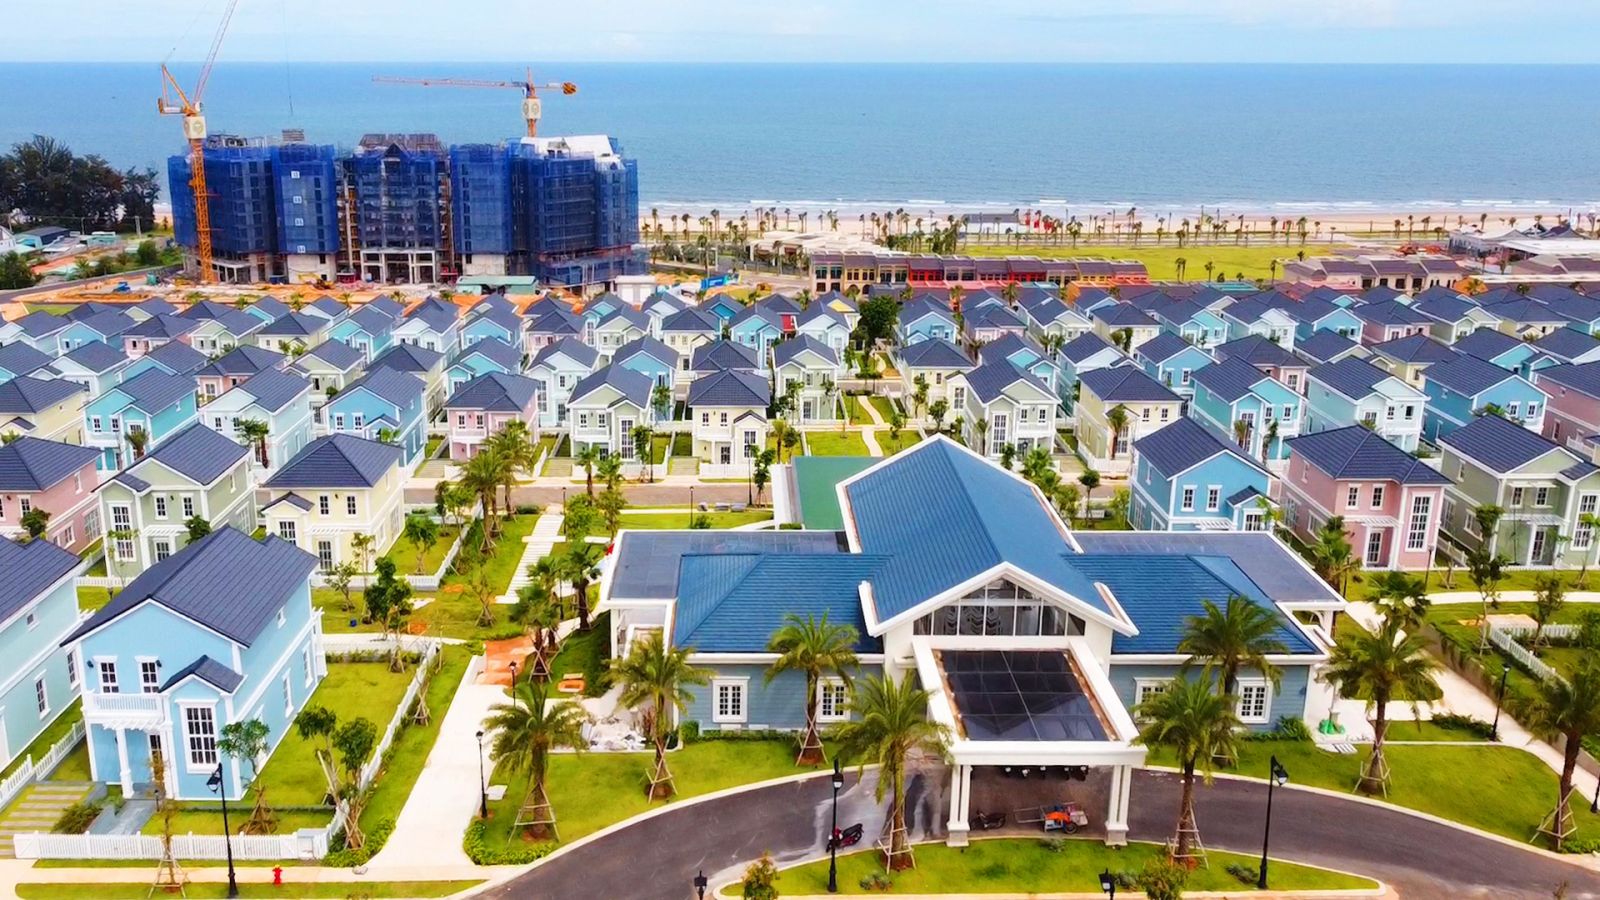 Tại Bình Thuận, Siêu thành phố biển - du lịch - sức khỏe NovaWorld Phan Thiet của Novaland có quy mô 1.000 ha, trải dài 7 km bờ biển, tổng mức đầu tư gần 5 tỷ USD